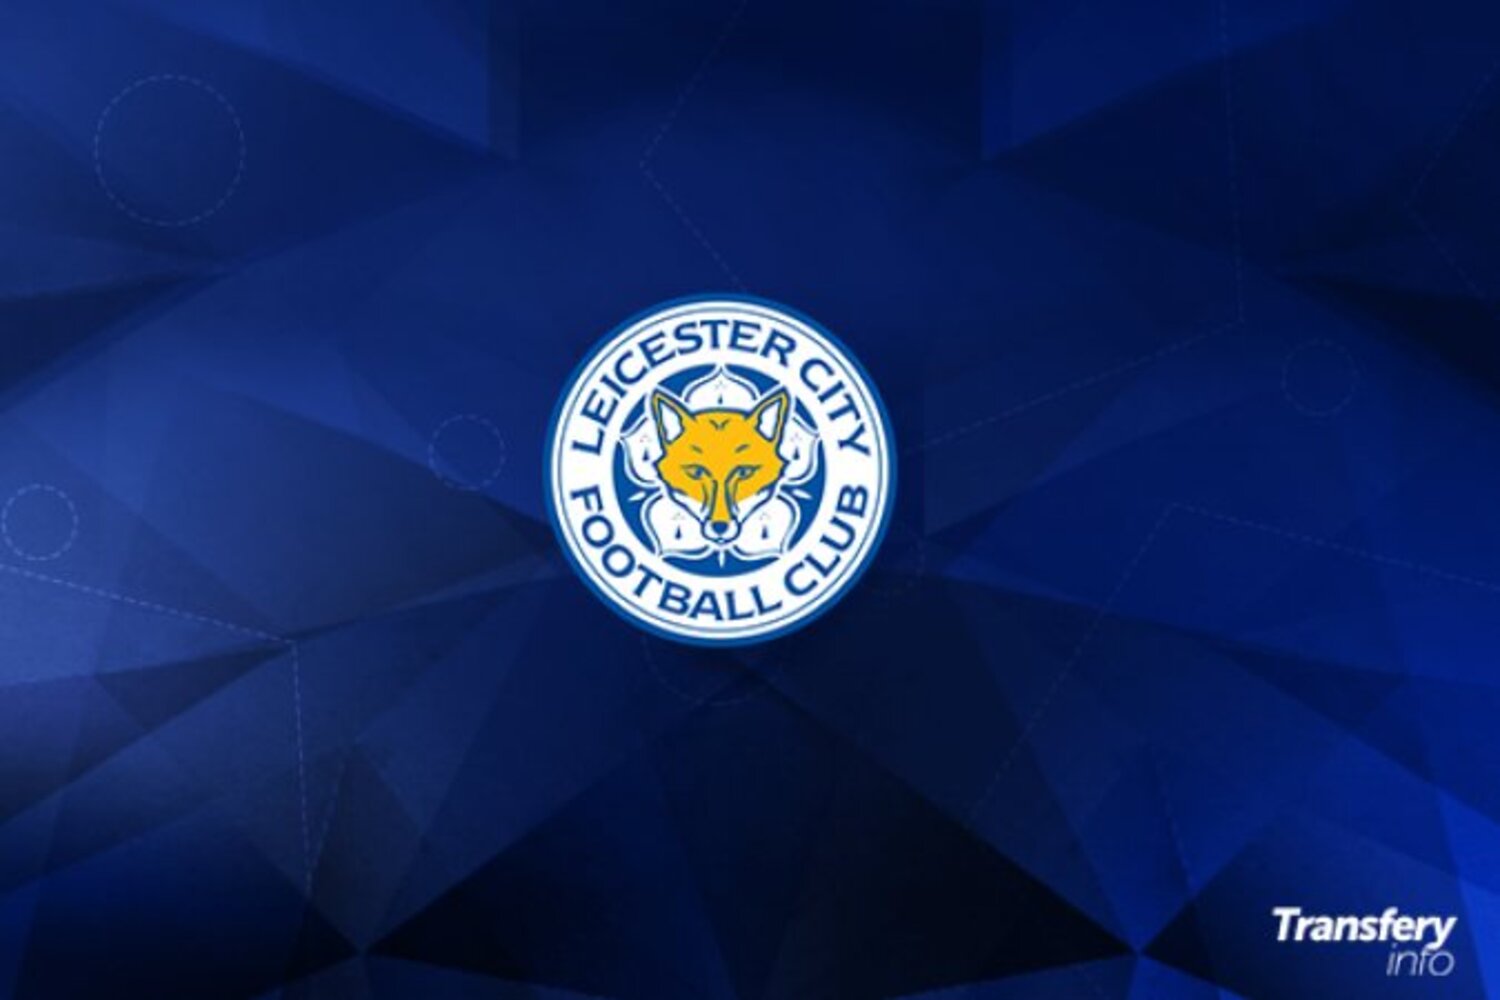 OFICJALNIE: Filip Benković ponownie opuścił Leicester City. Latem 2018 roku kosztował 13 milionów funtów